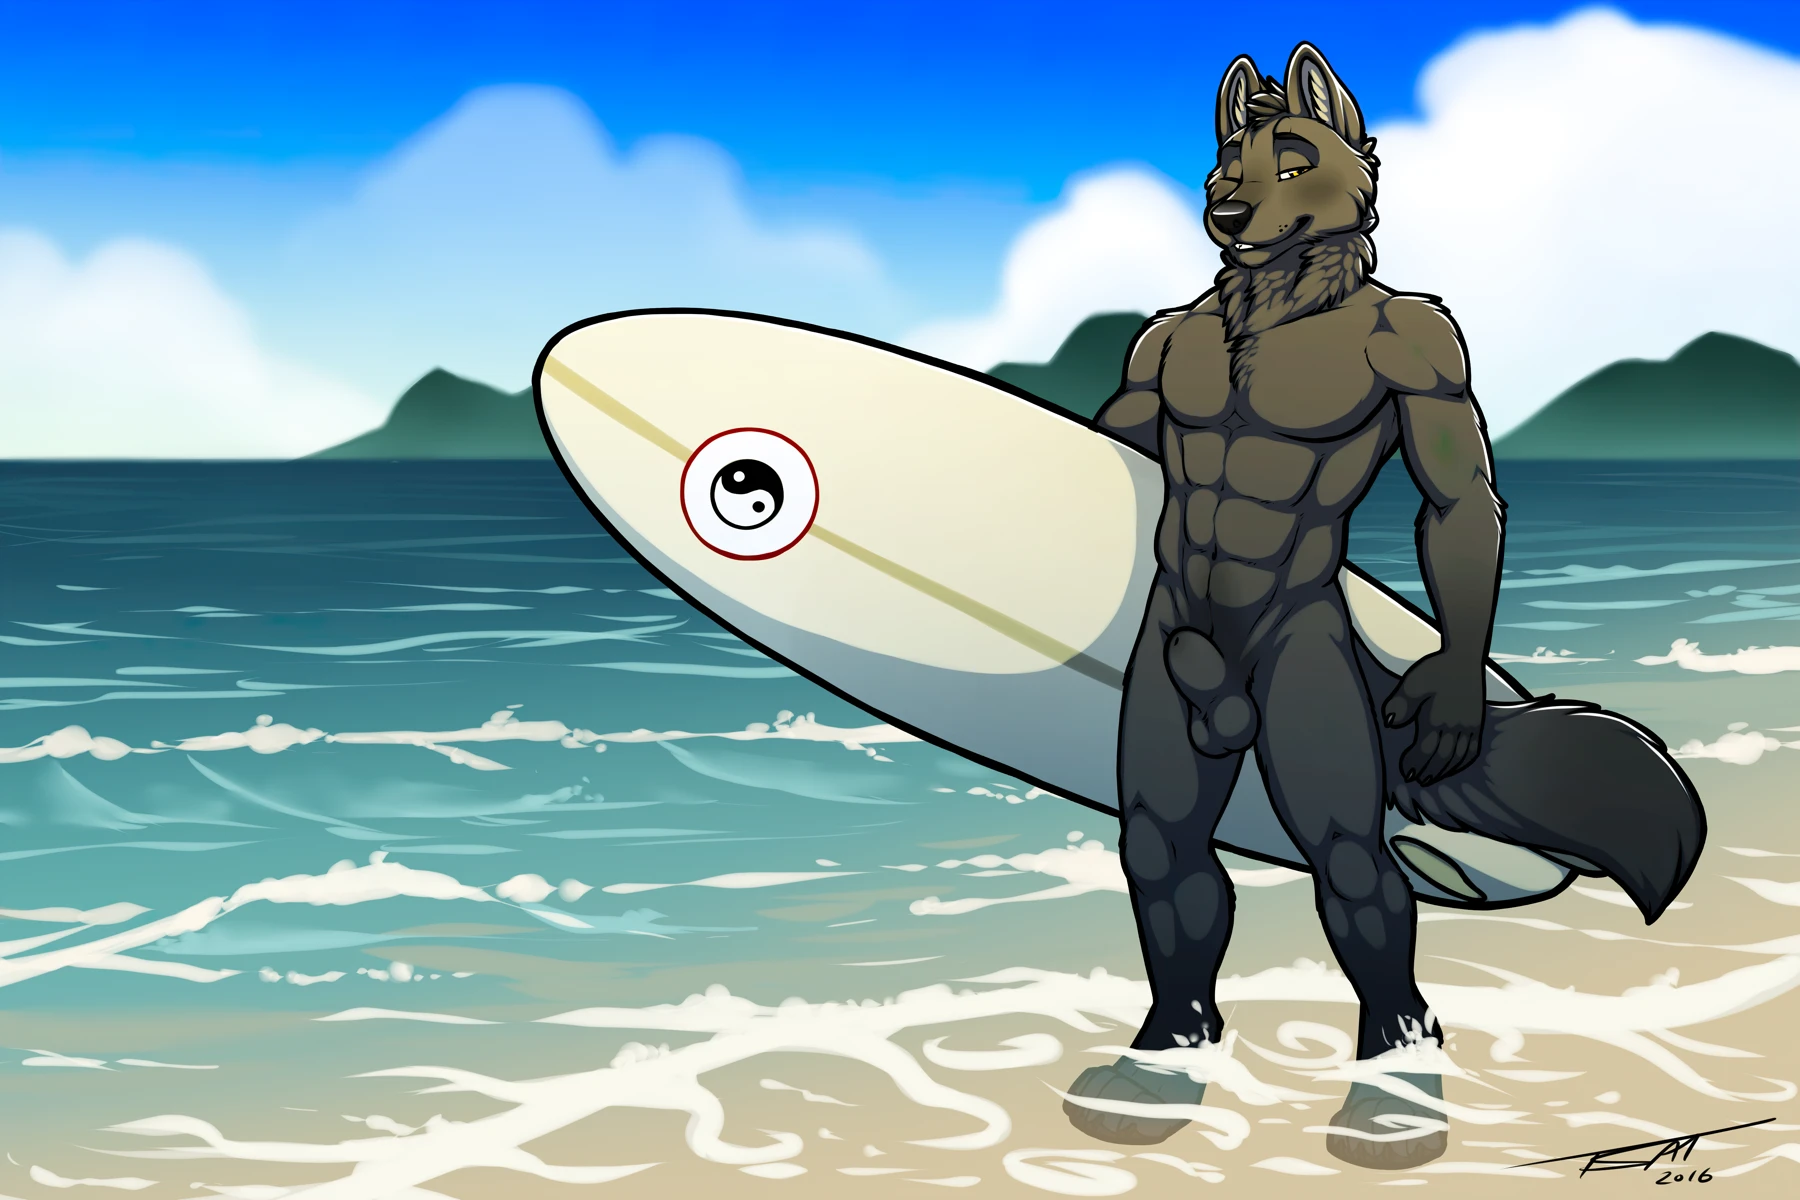 Tsaiwolf2016-SurferShep-sheath